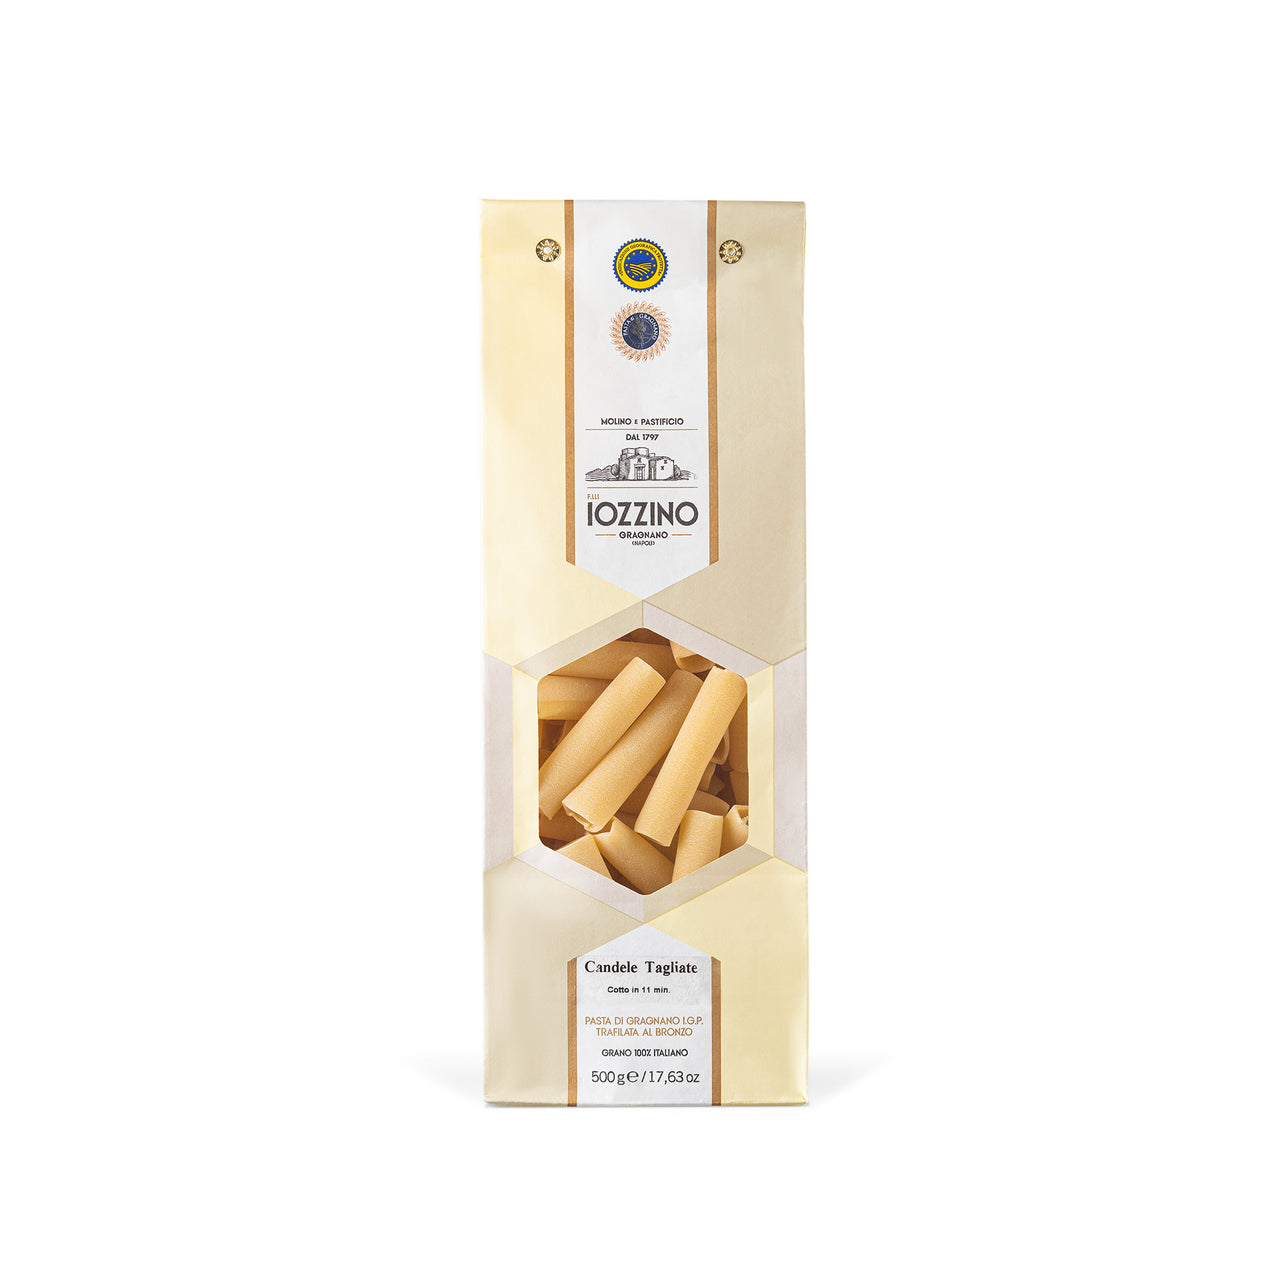 Paquet de pâtes Strenna de Gragnano IGP (3Kg - 6x500g)